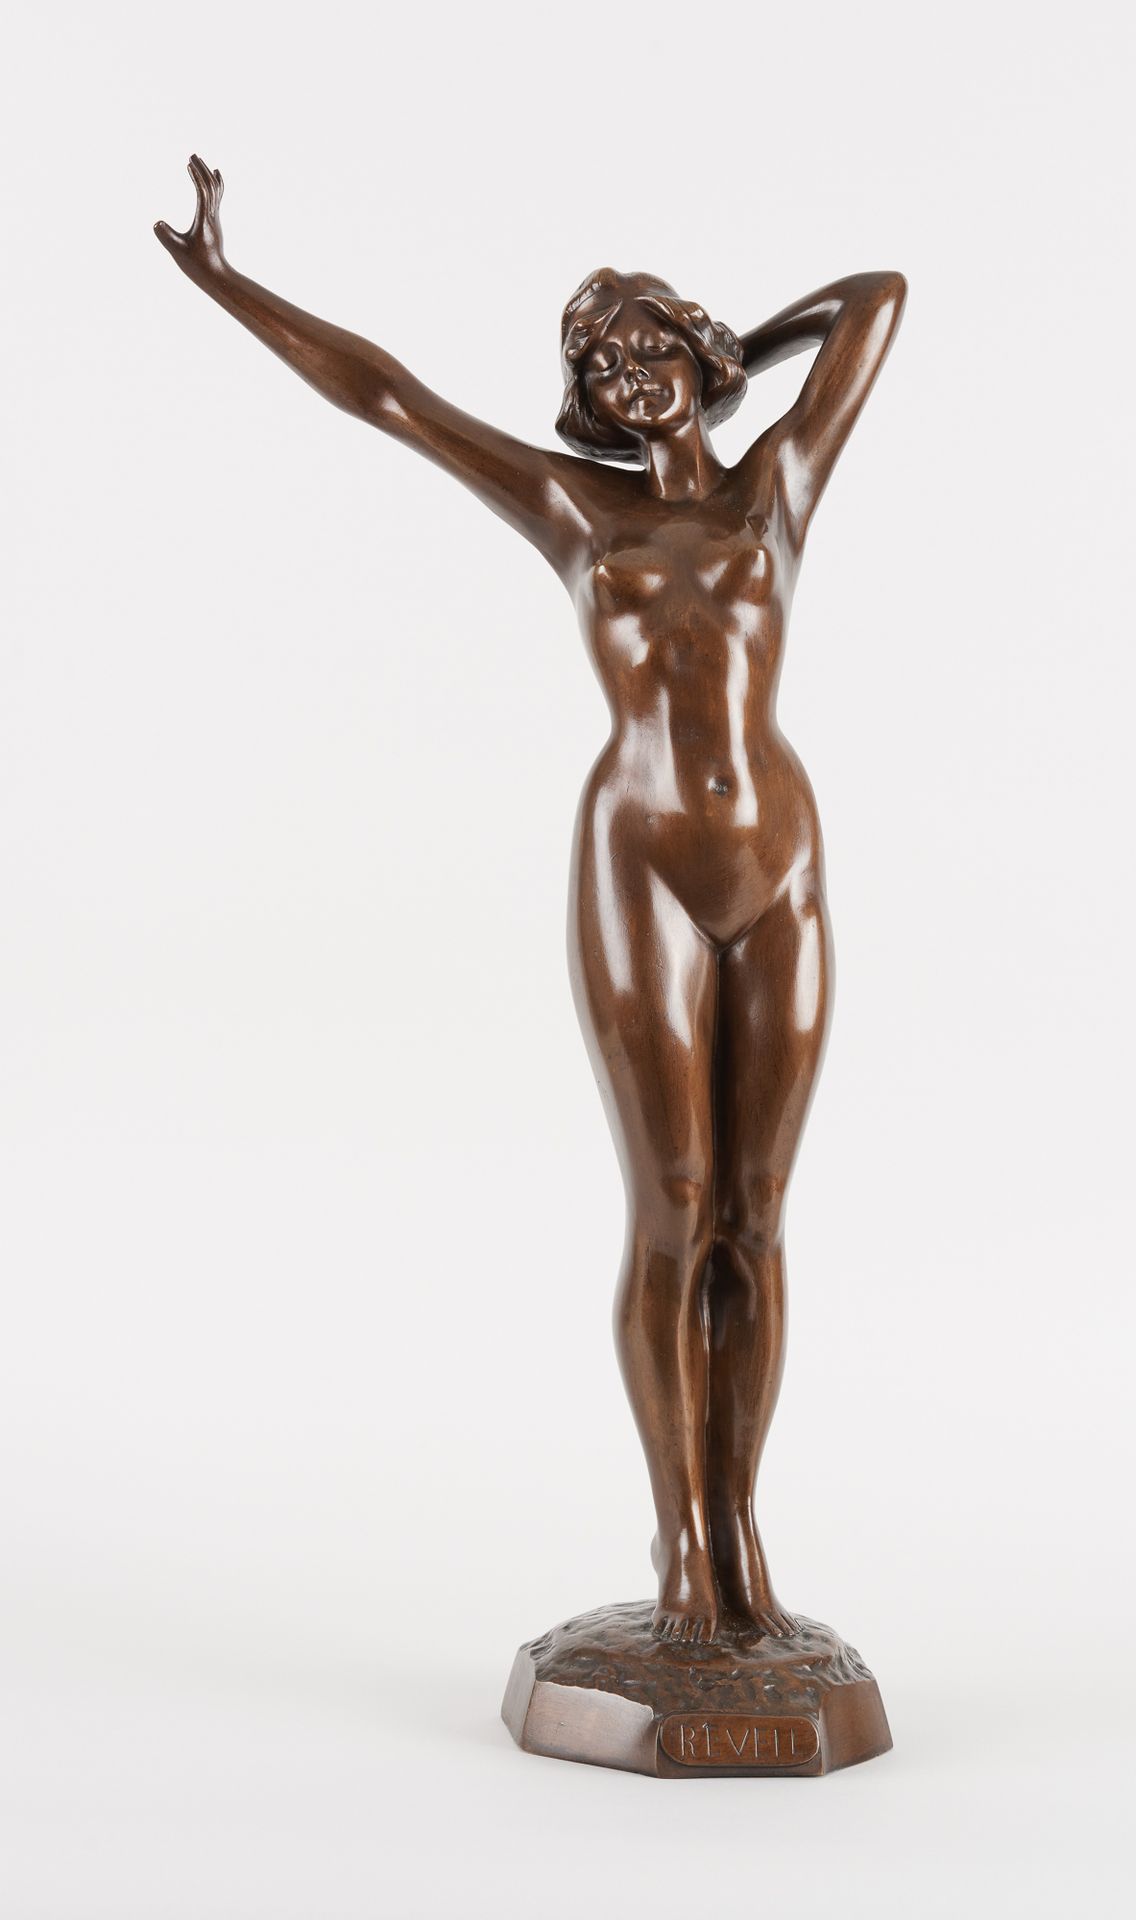 Travail du 20e. Bronzeskulptur mit brauner Patina: Wecker.

Maße: H.: 72,5 cm.